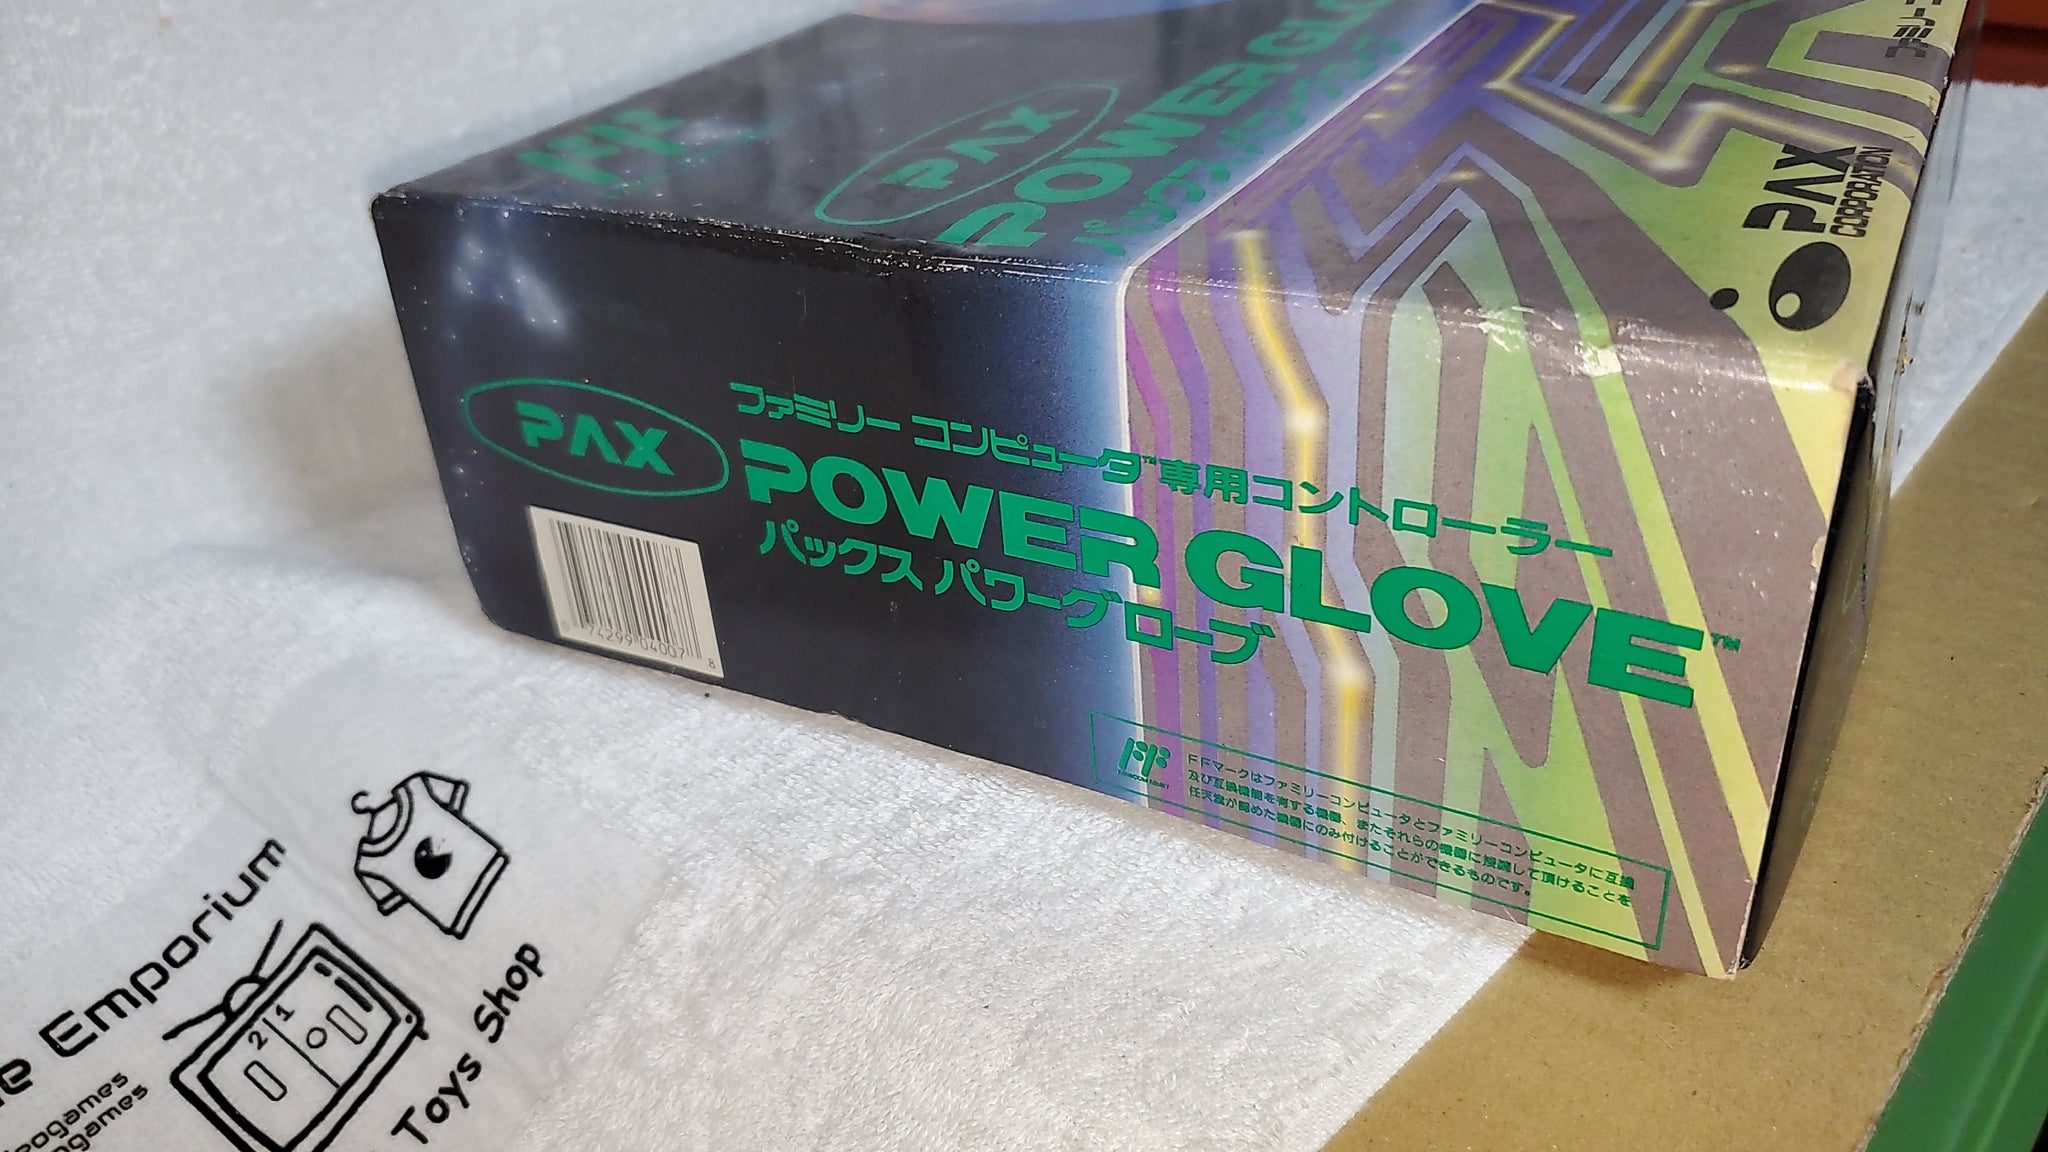 pax power glove nintendo famicom fc japan – The Emporium